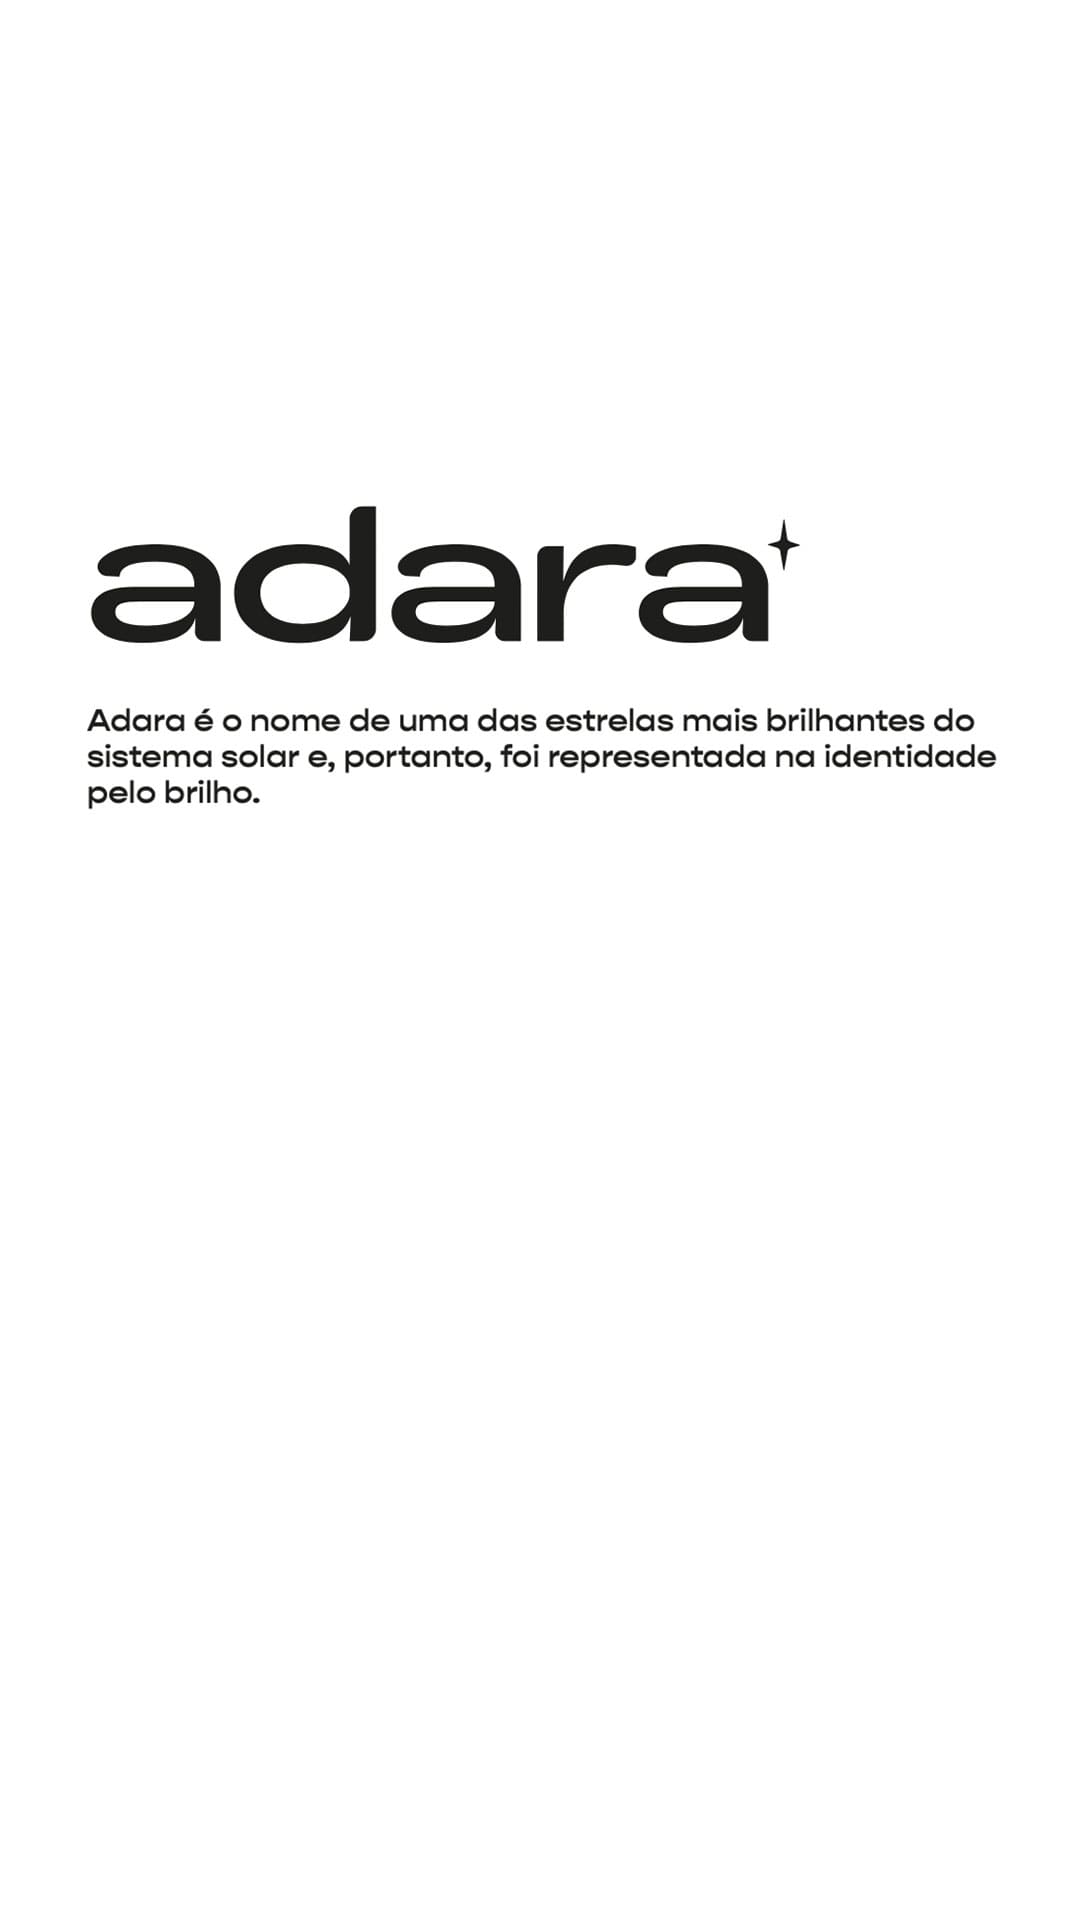 adara-03